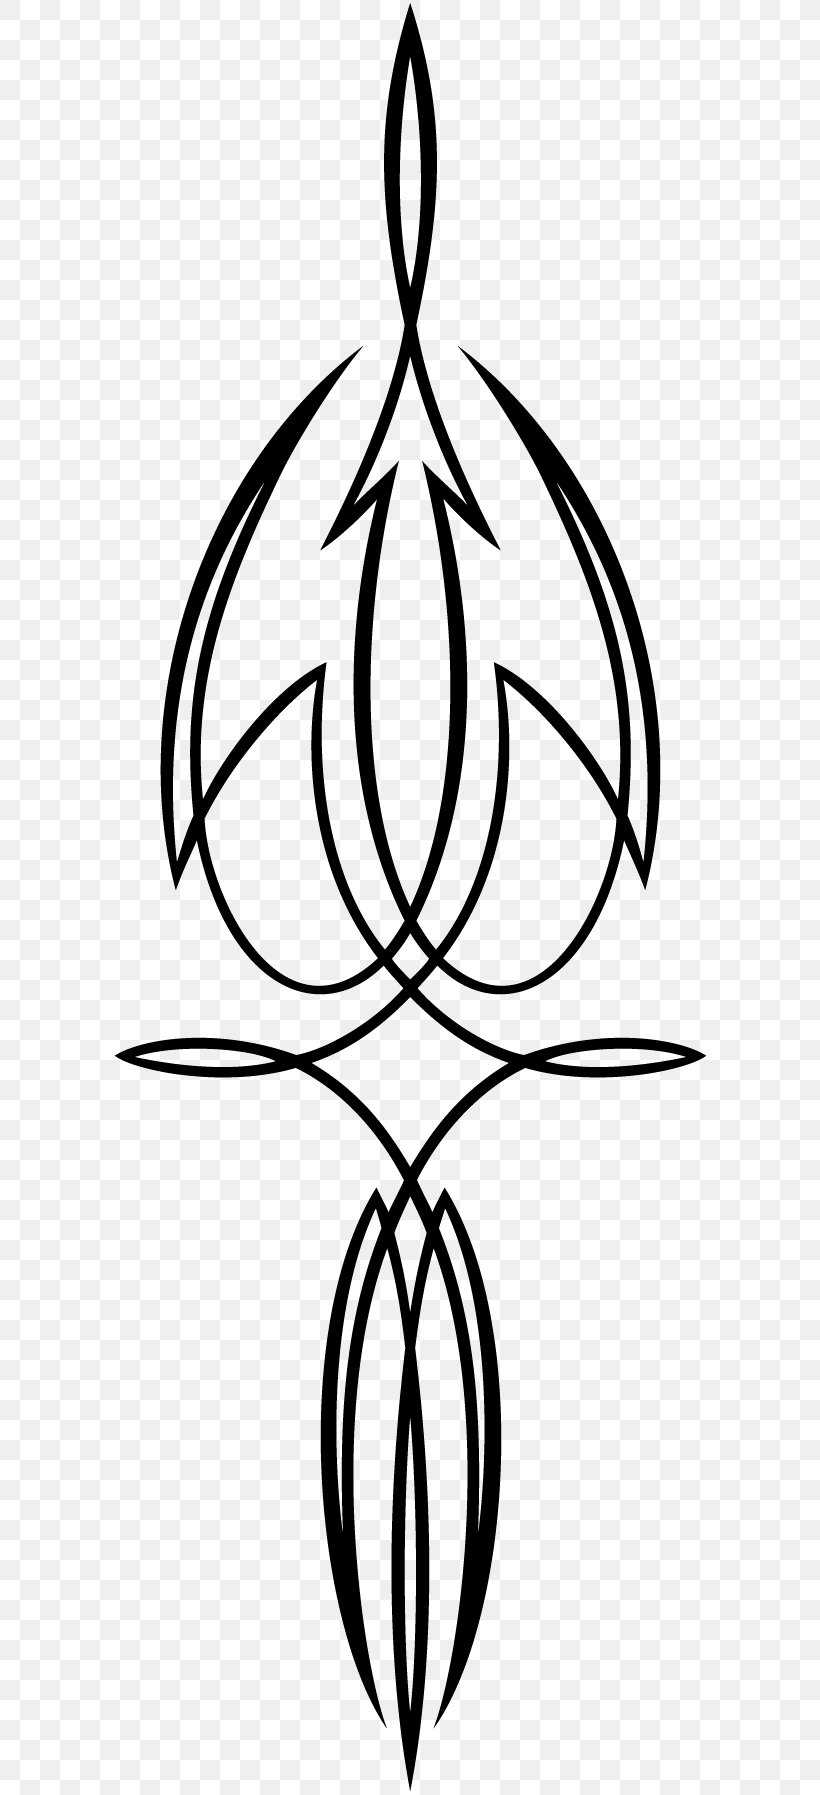 Clip Art Leaf Symmetry Pattern Flower, PNG, 600x1795px, Leaf, Artwork, Black And White, Flora, Flower Download Free